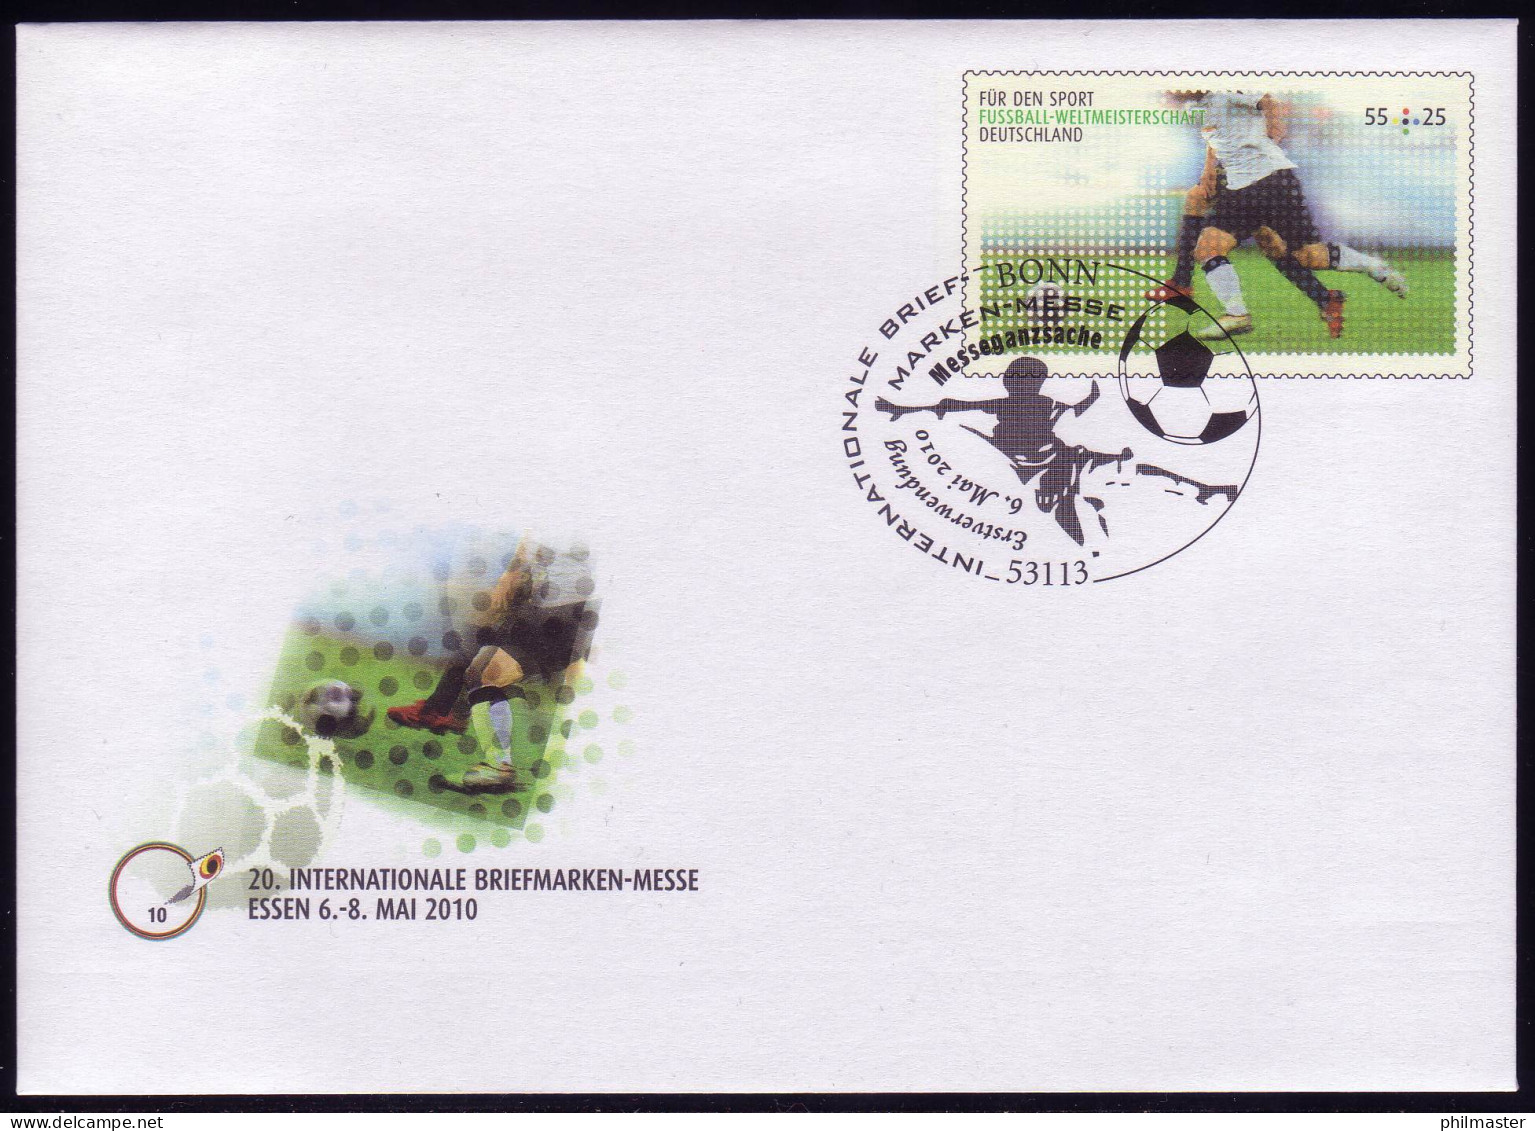 USo 207 Briefmarken-Messe Essen - Fußball-WM 2010, EV-O Bonn 6.5.10 - Covers - Mint